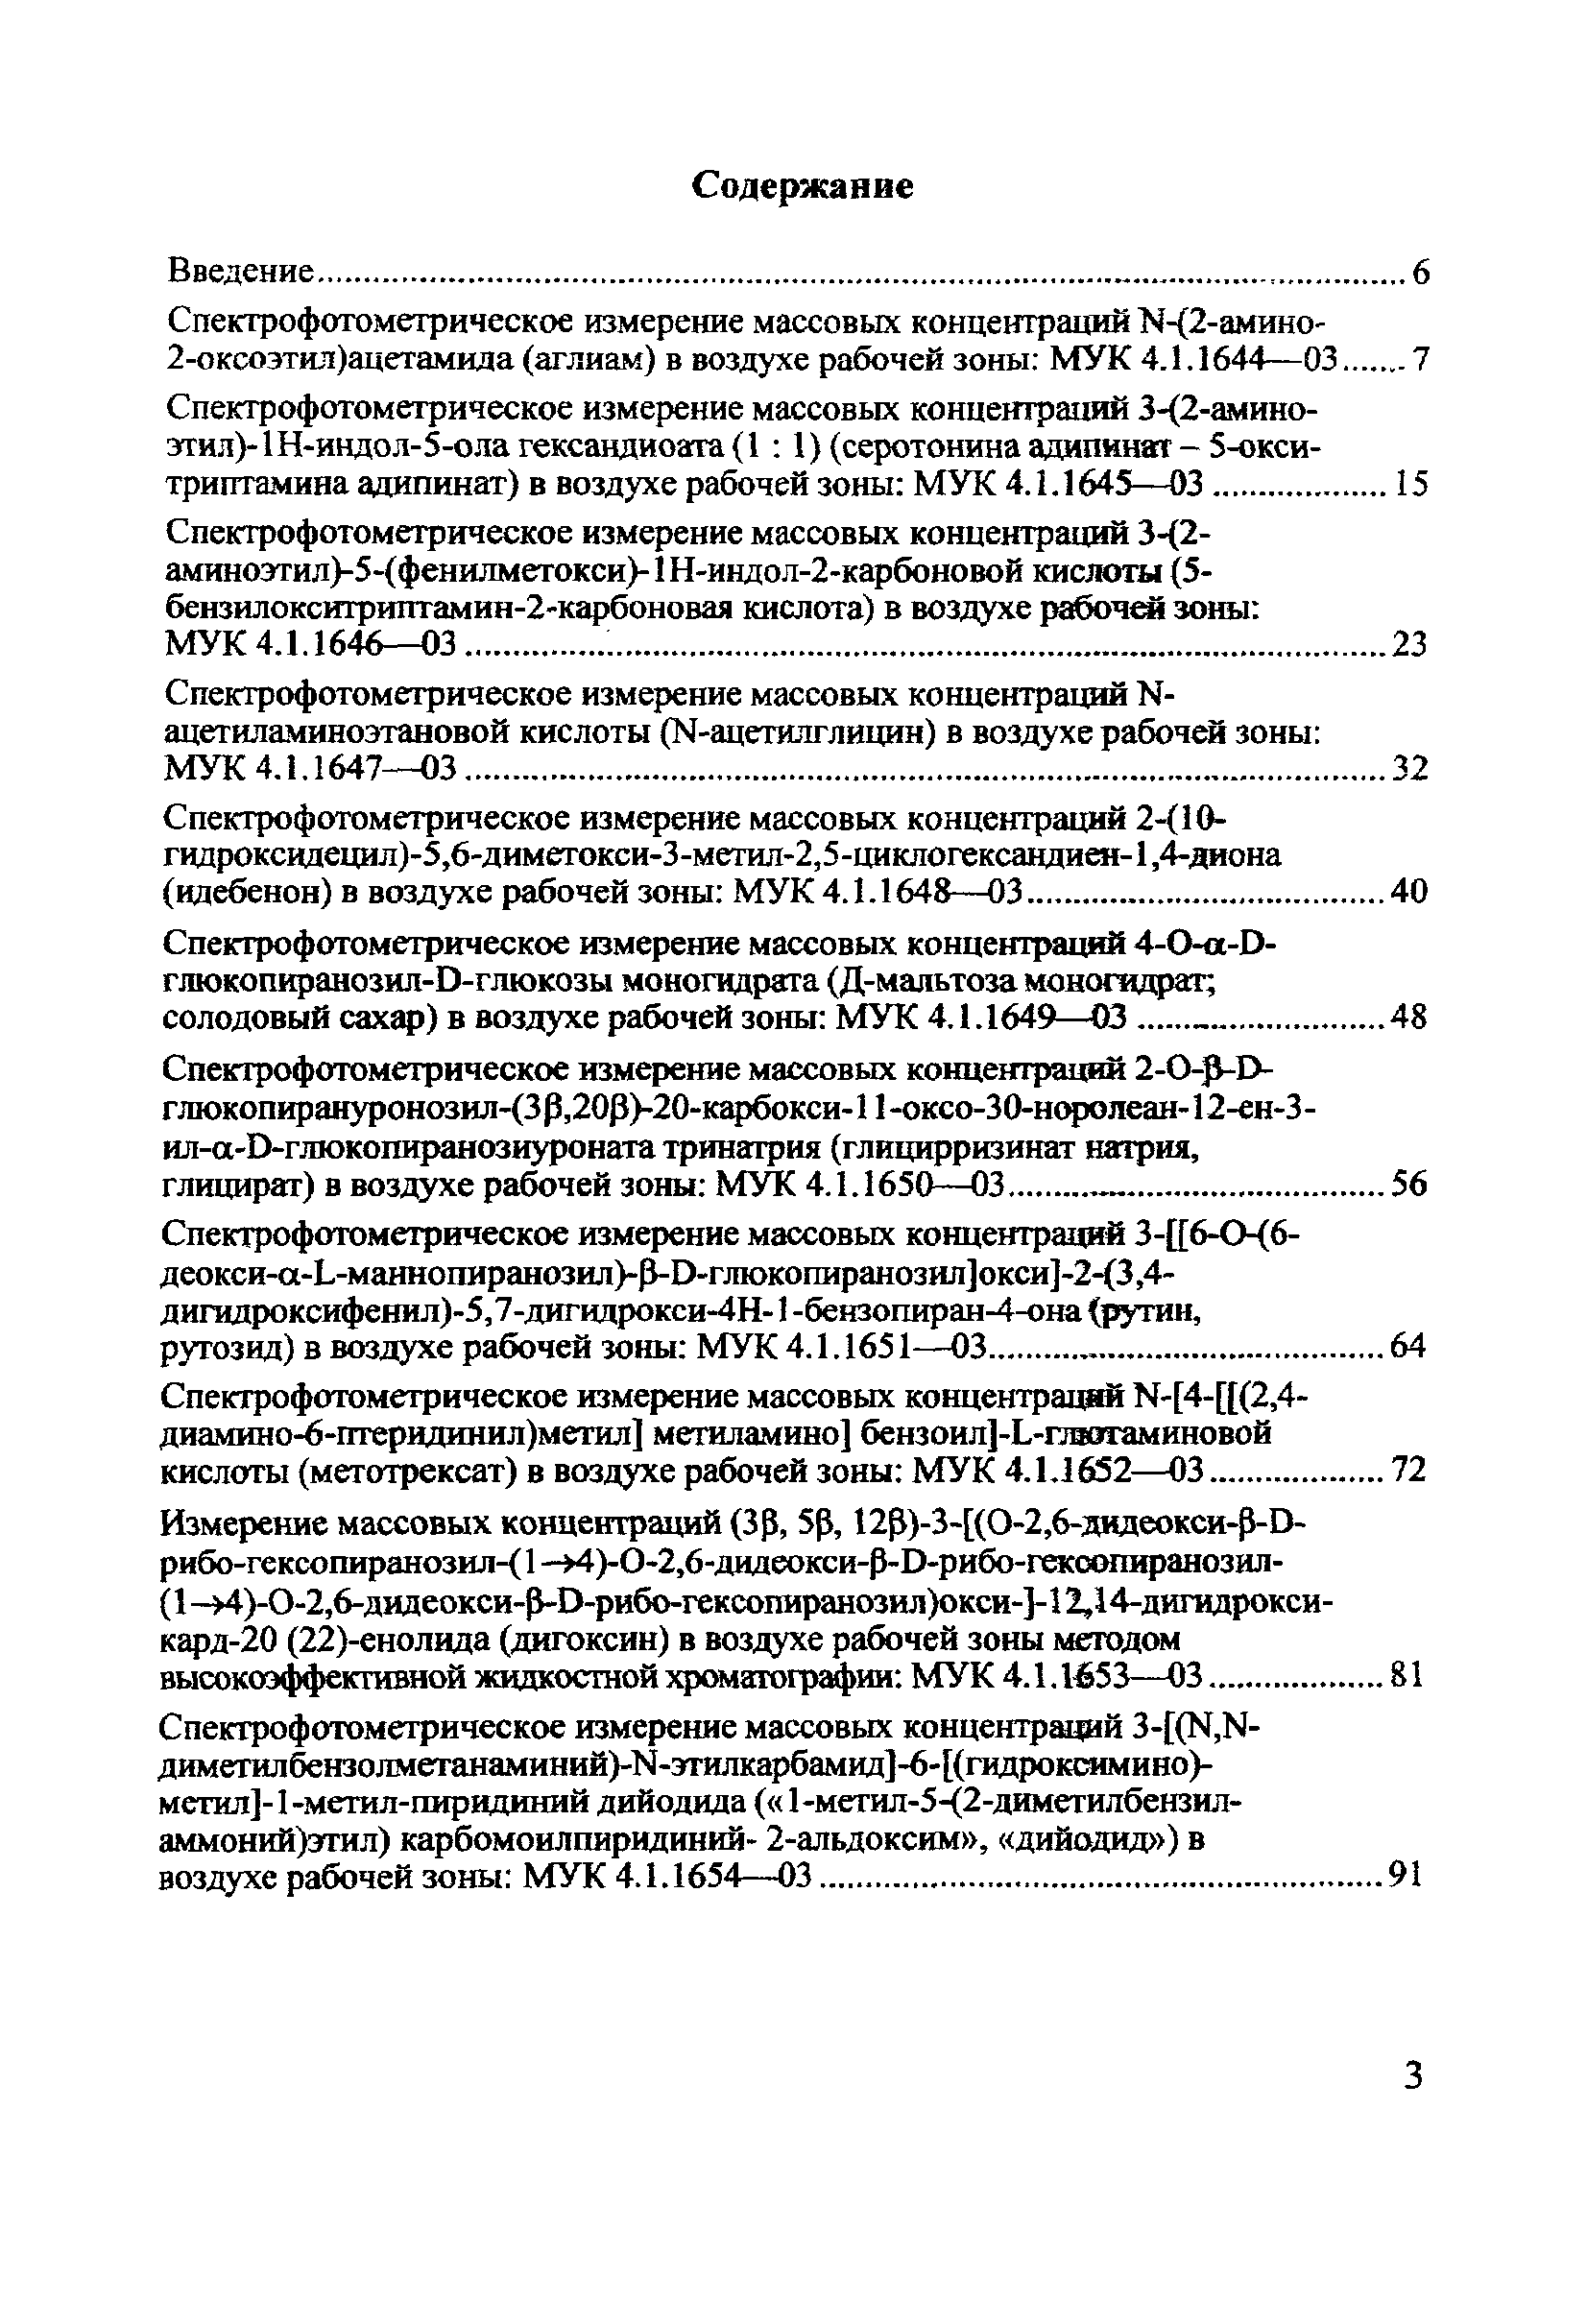 МУК 4.1.1647-03